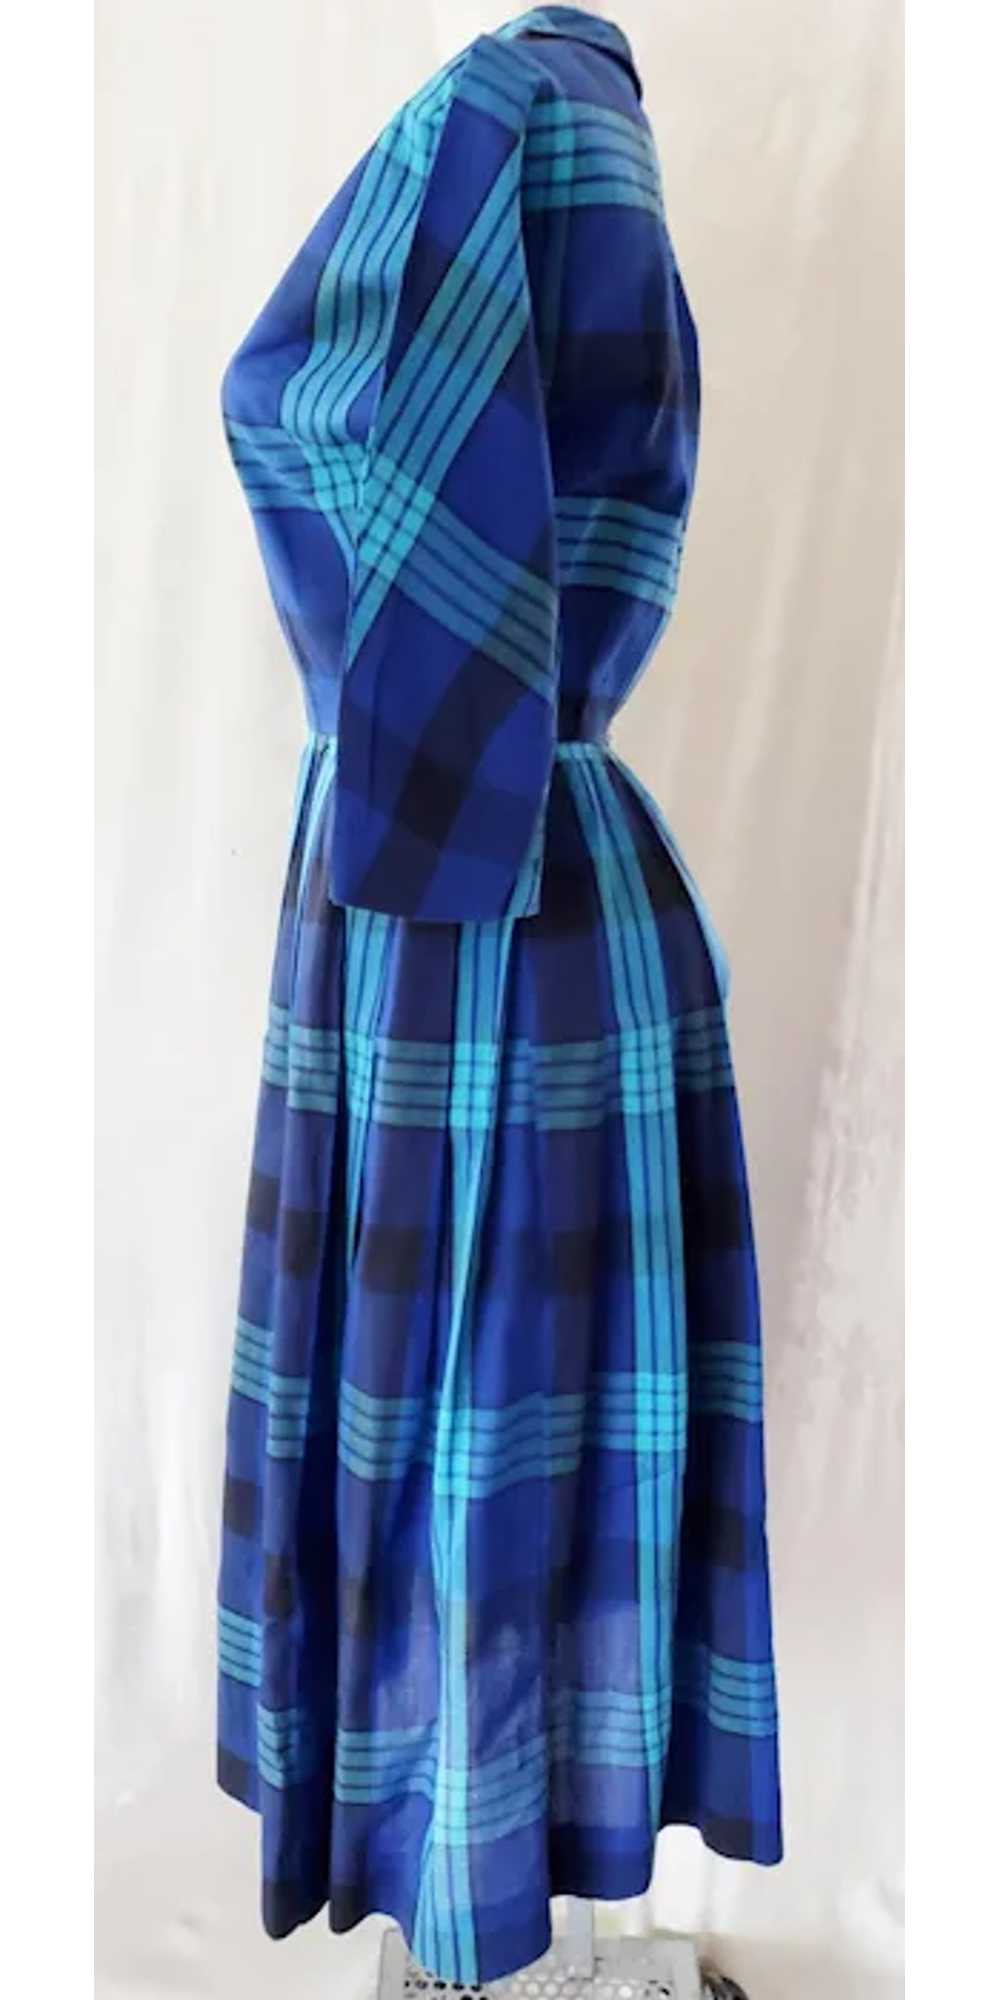 CRISP, BRIGHT Shirtwaist 1960's Dress - image 3